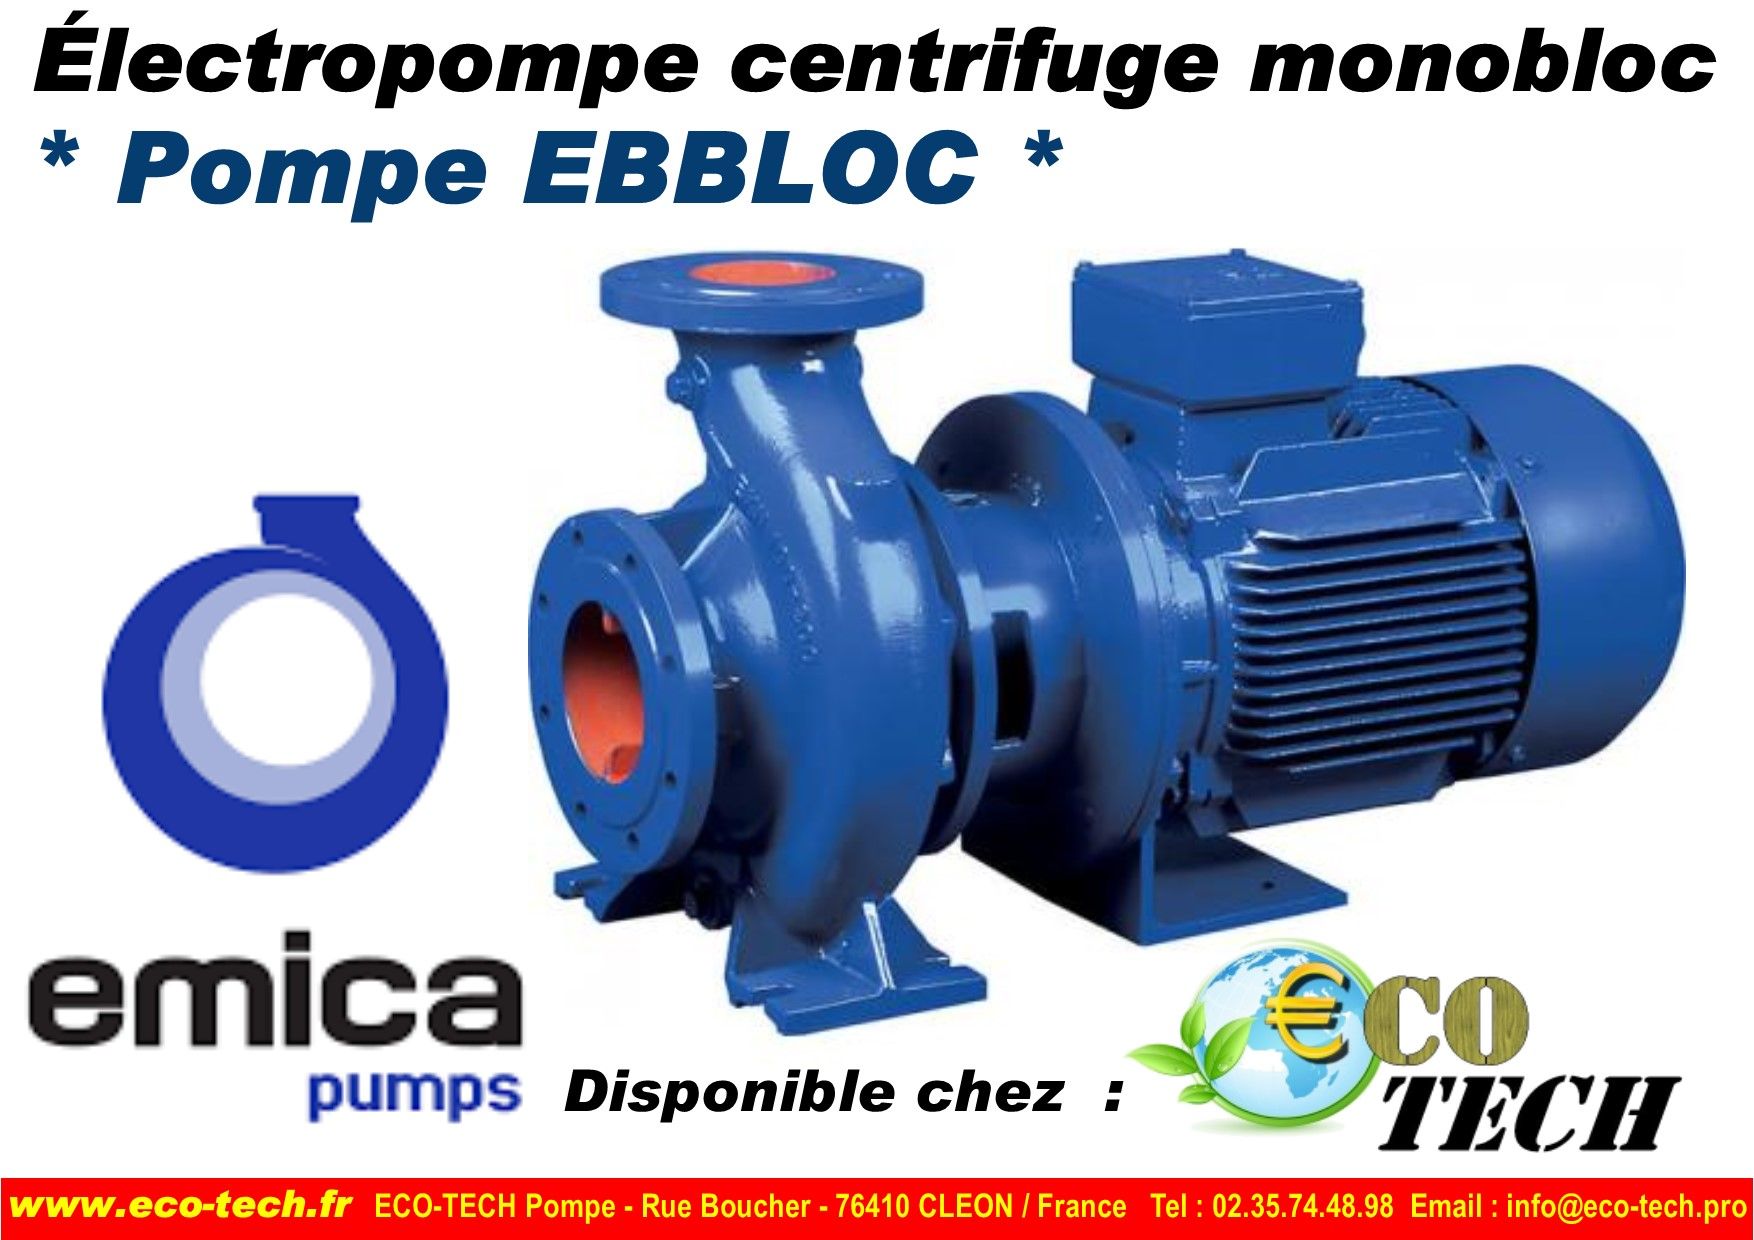 Pompe emica ebloc électropompe centrifuge monobloc distributeur eco-tech_0